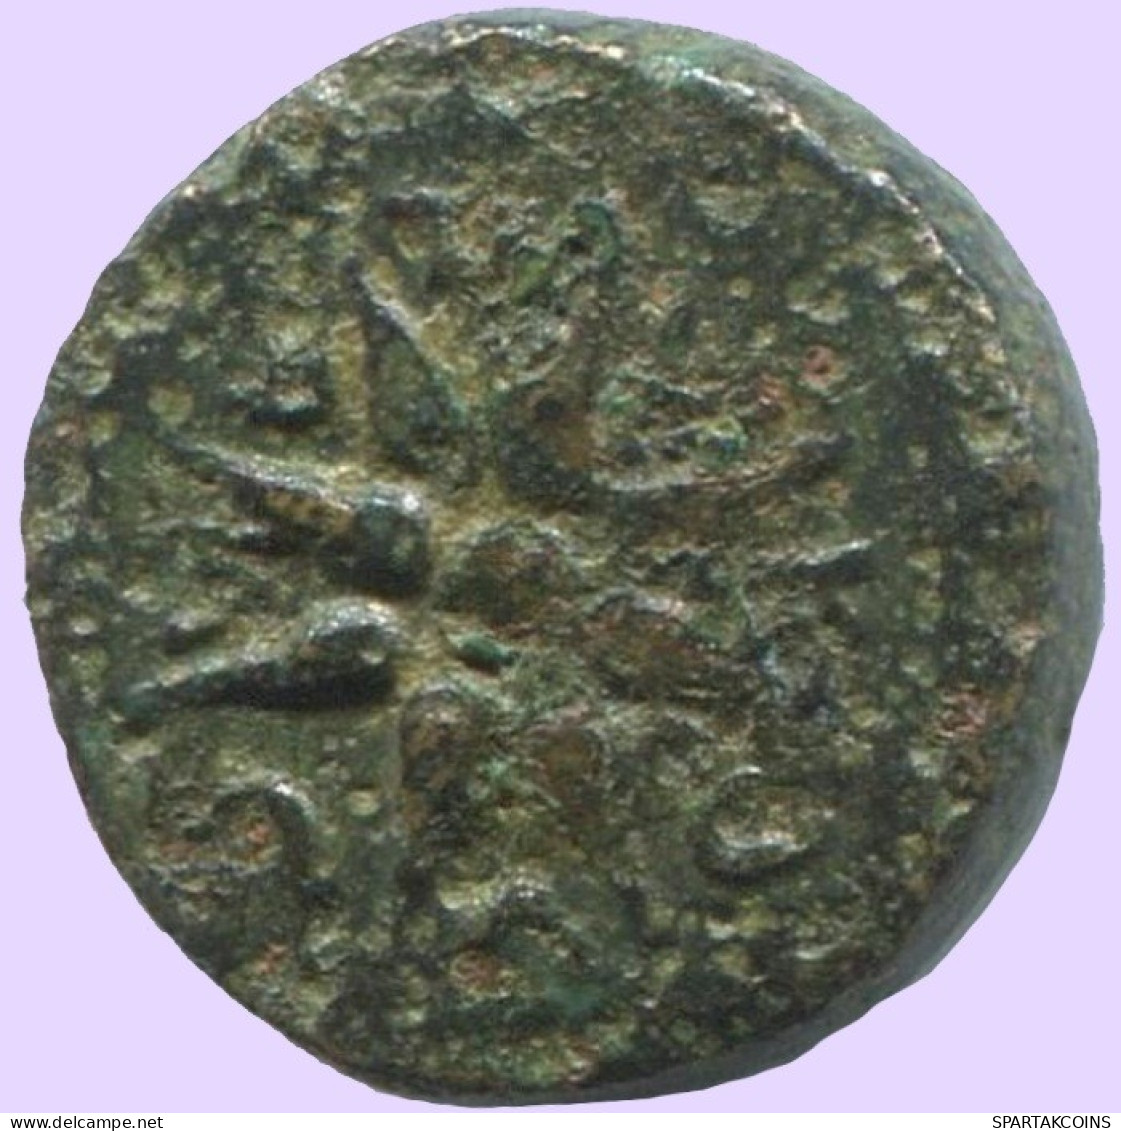 STAR Antiguo Auténtico Original GRIEGO Moneda 1.5g/10mm #ANT1671.10.E.A - Grecques